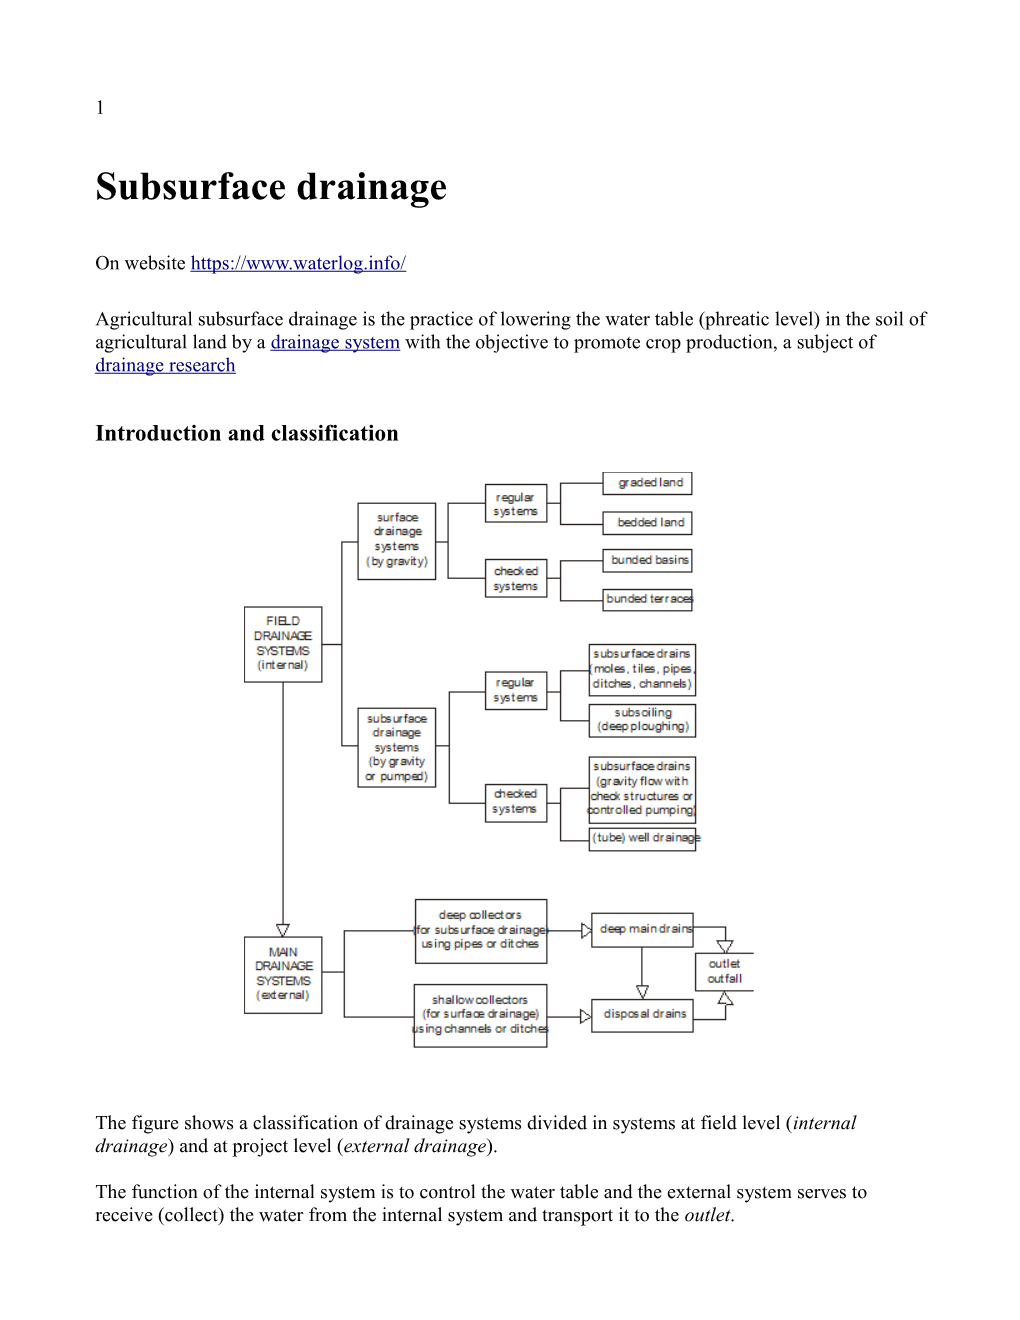 Subsurface Drainage